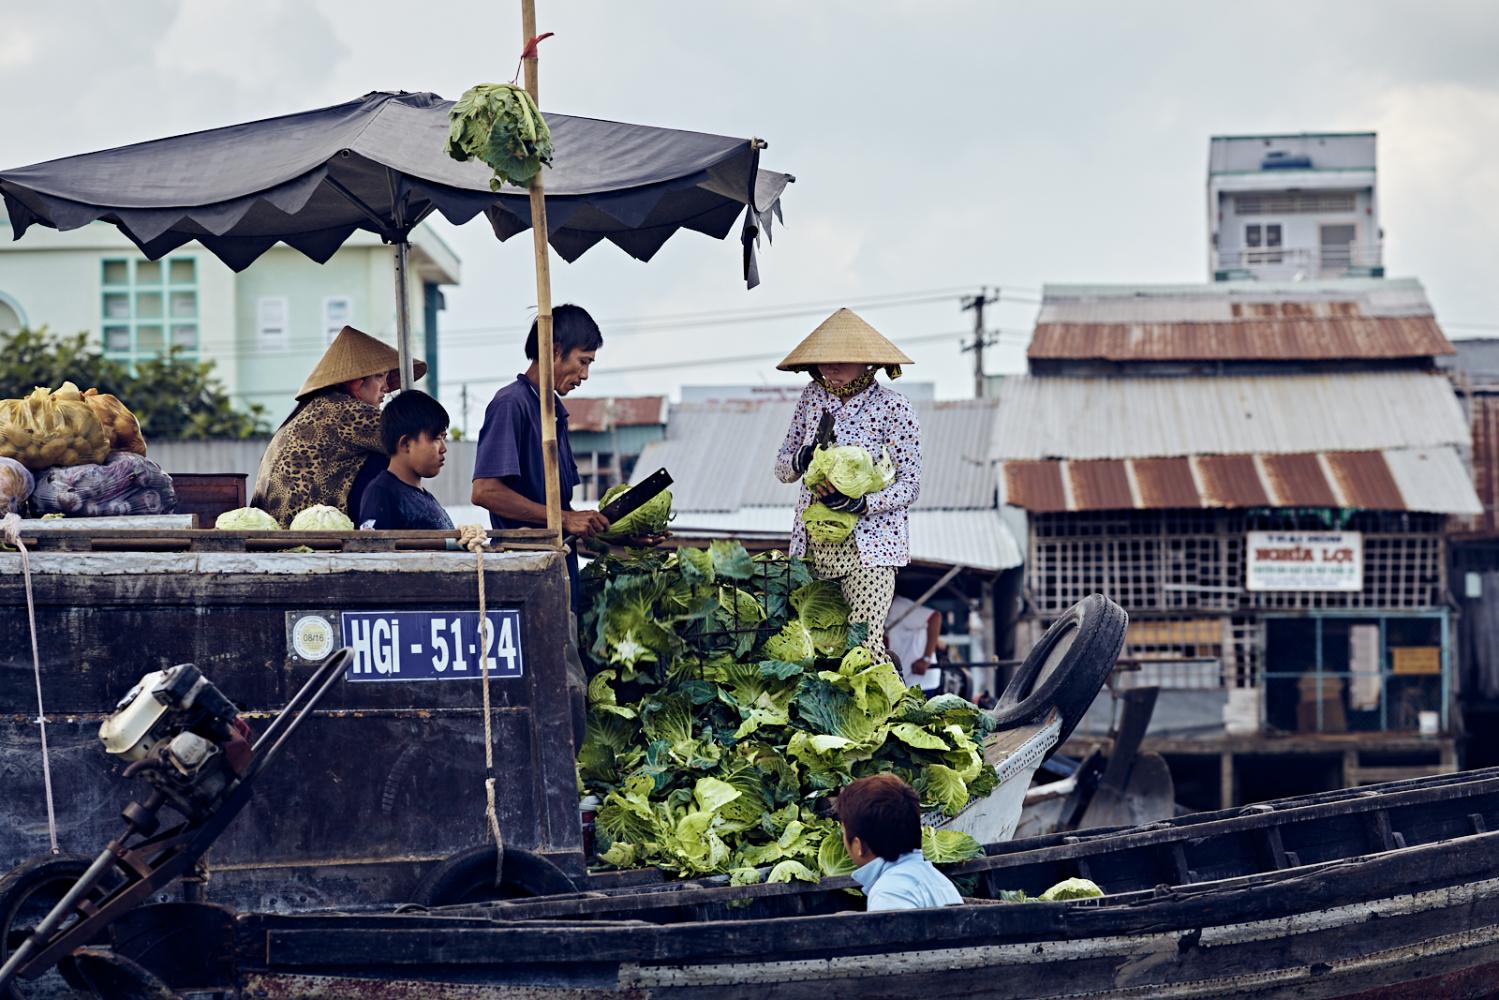  Floating Market, Cáº§n ThÆ¡, Vietnam 2016 